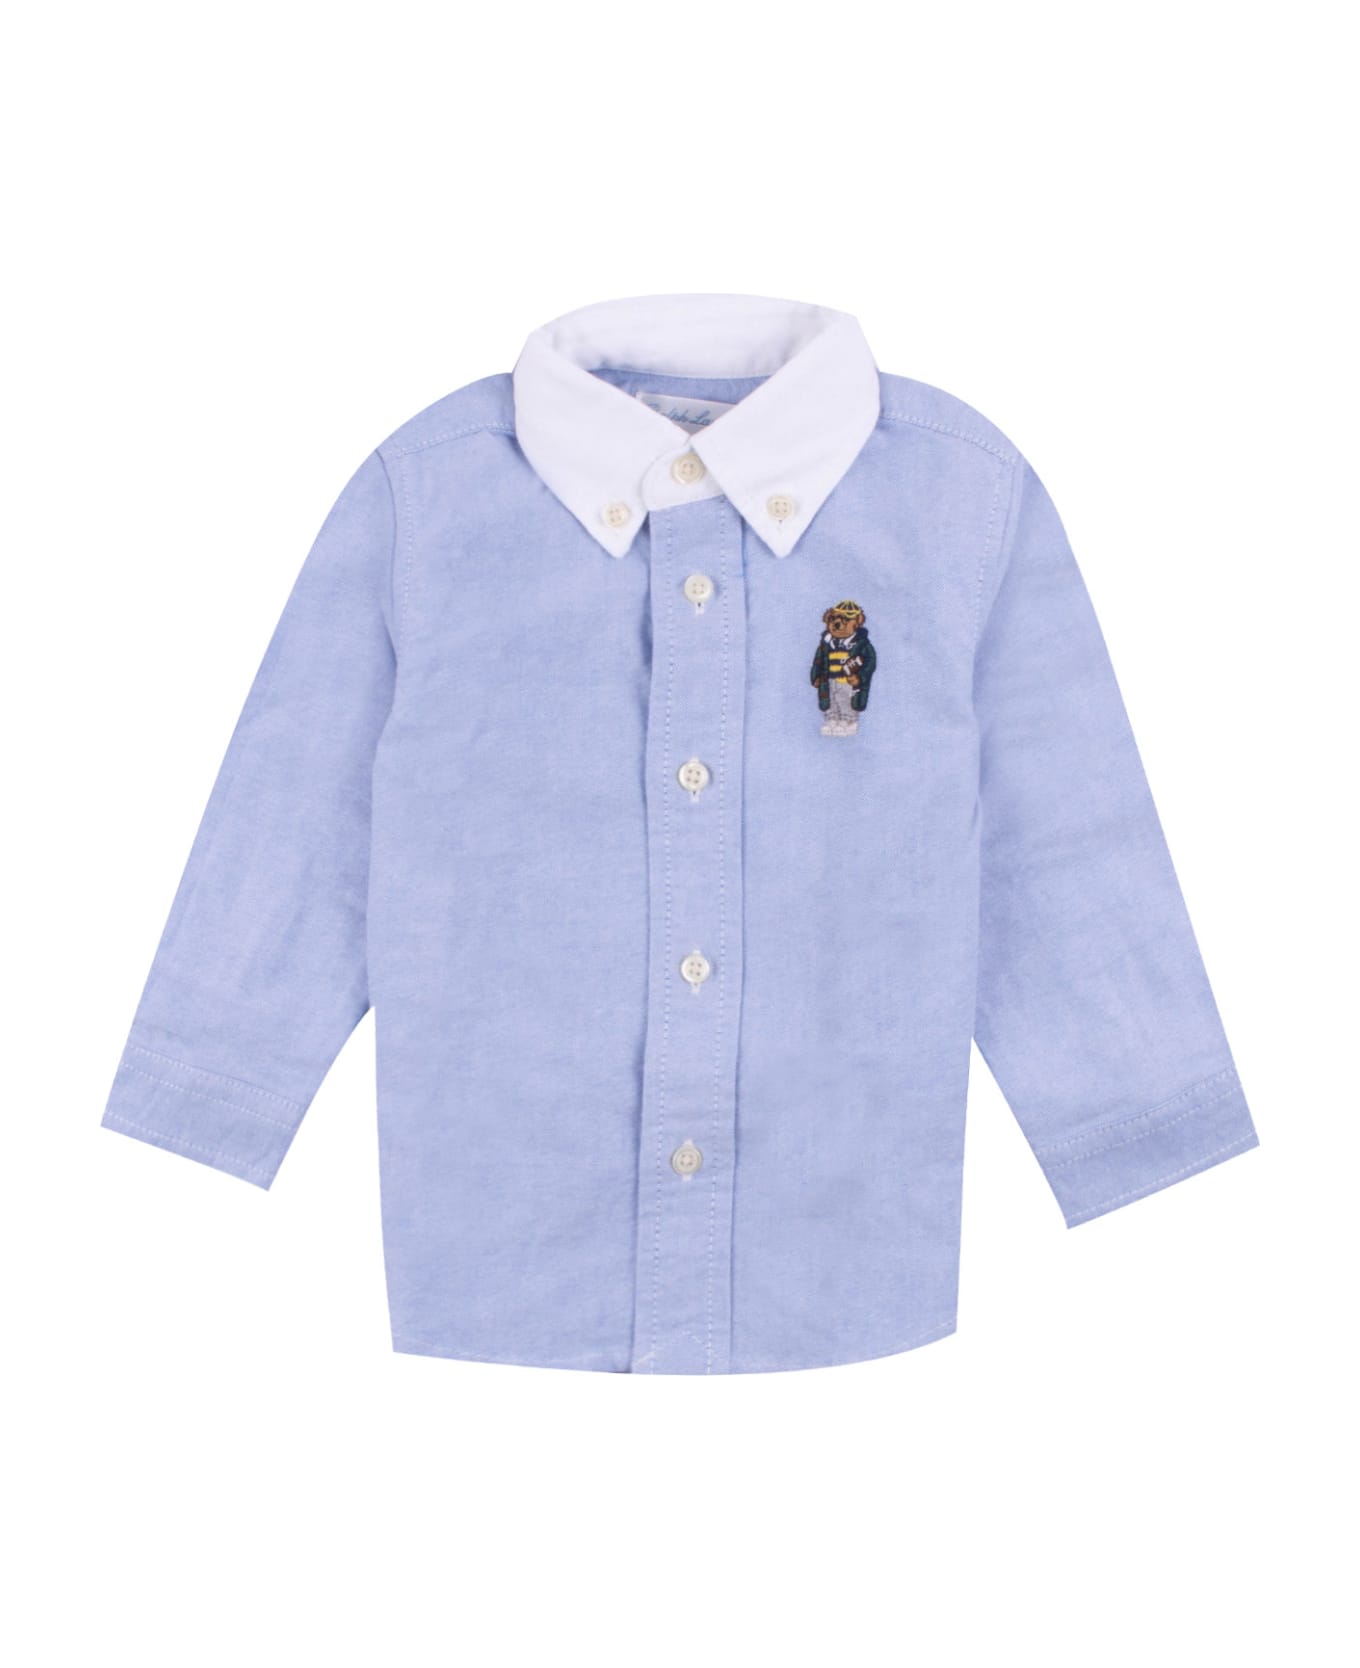 Ralph Lauren Cotton Shirt - Light blue